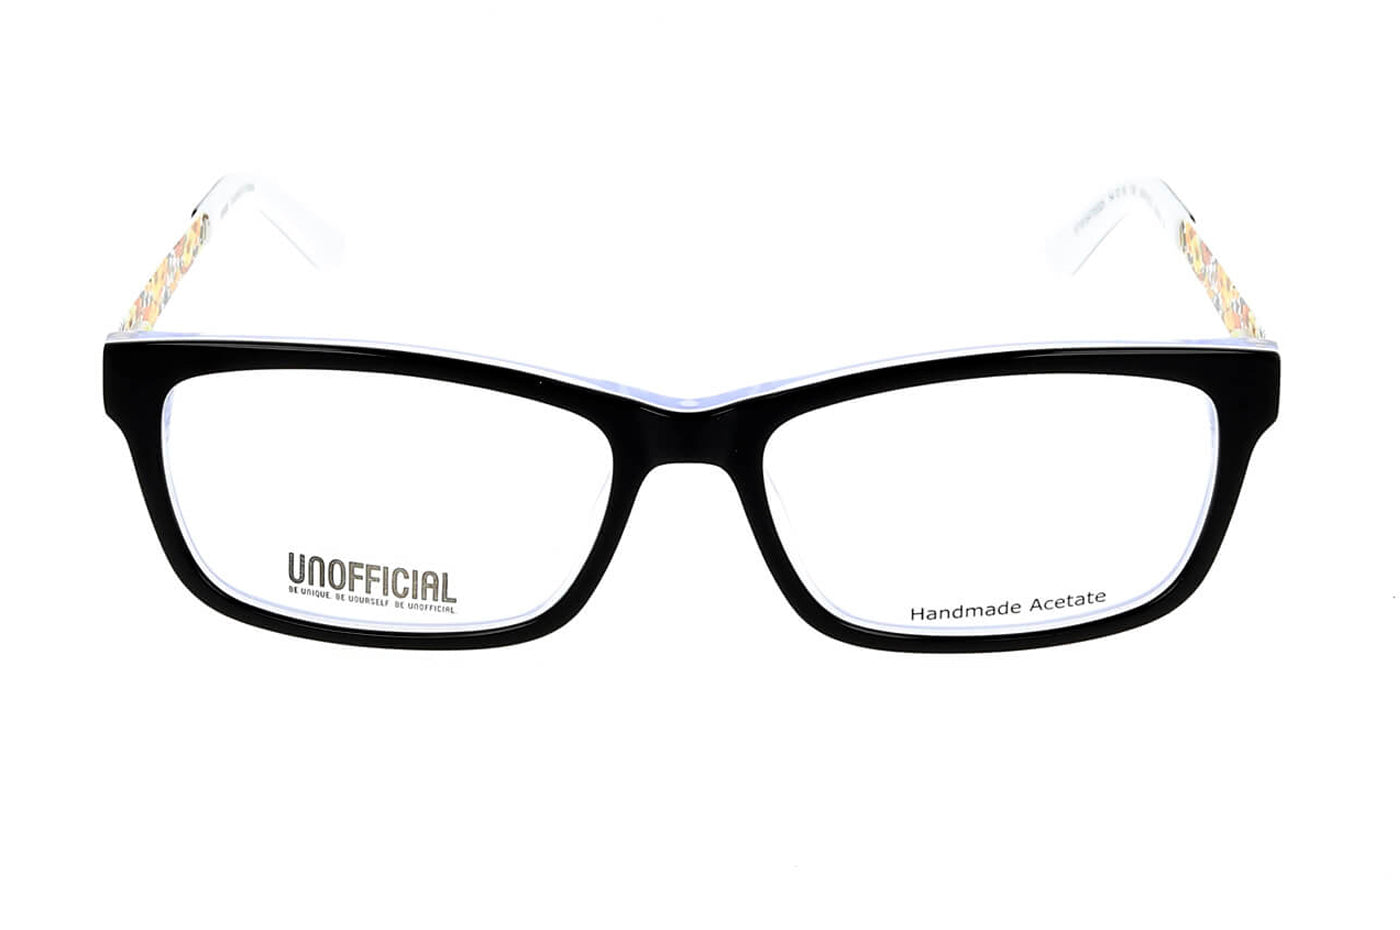 Vista-1 - Gafas oftálmicas Unofficial BP_UNOF0037 Mujer Color Negro / Incluye lentes filtro luz azul violeta